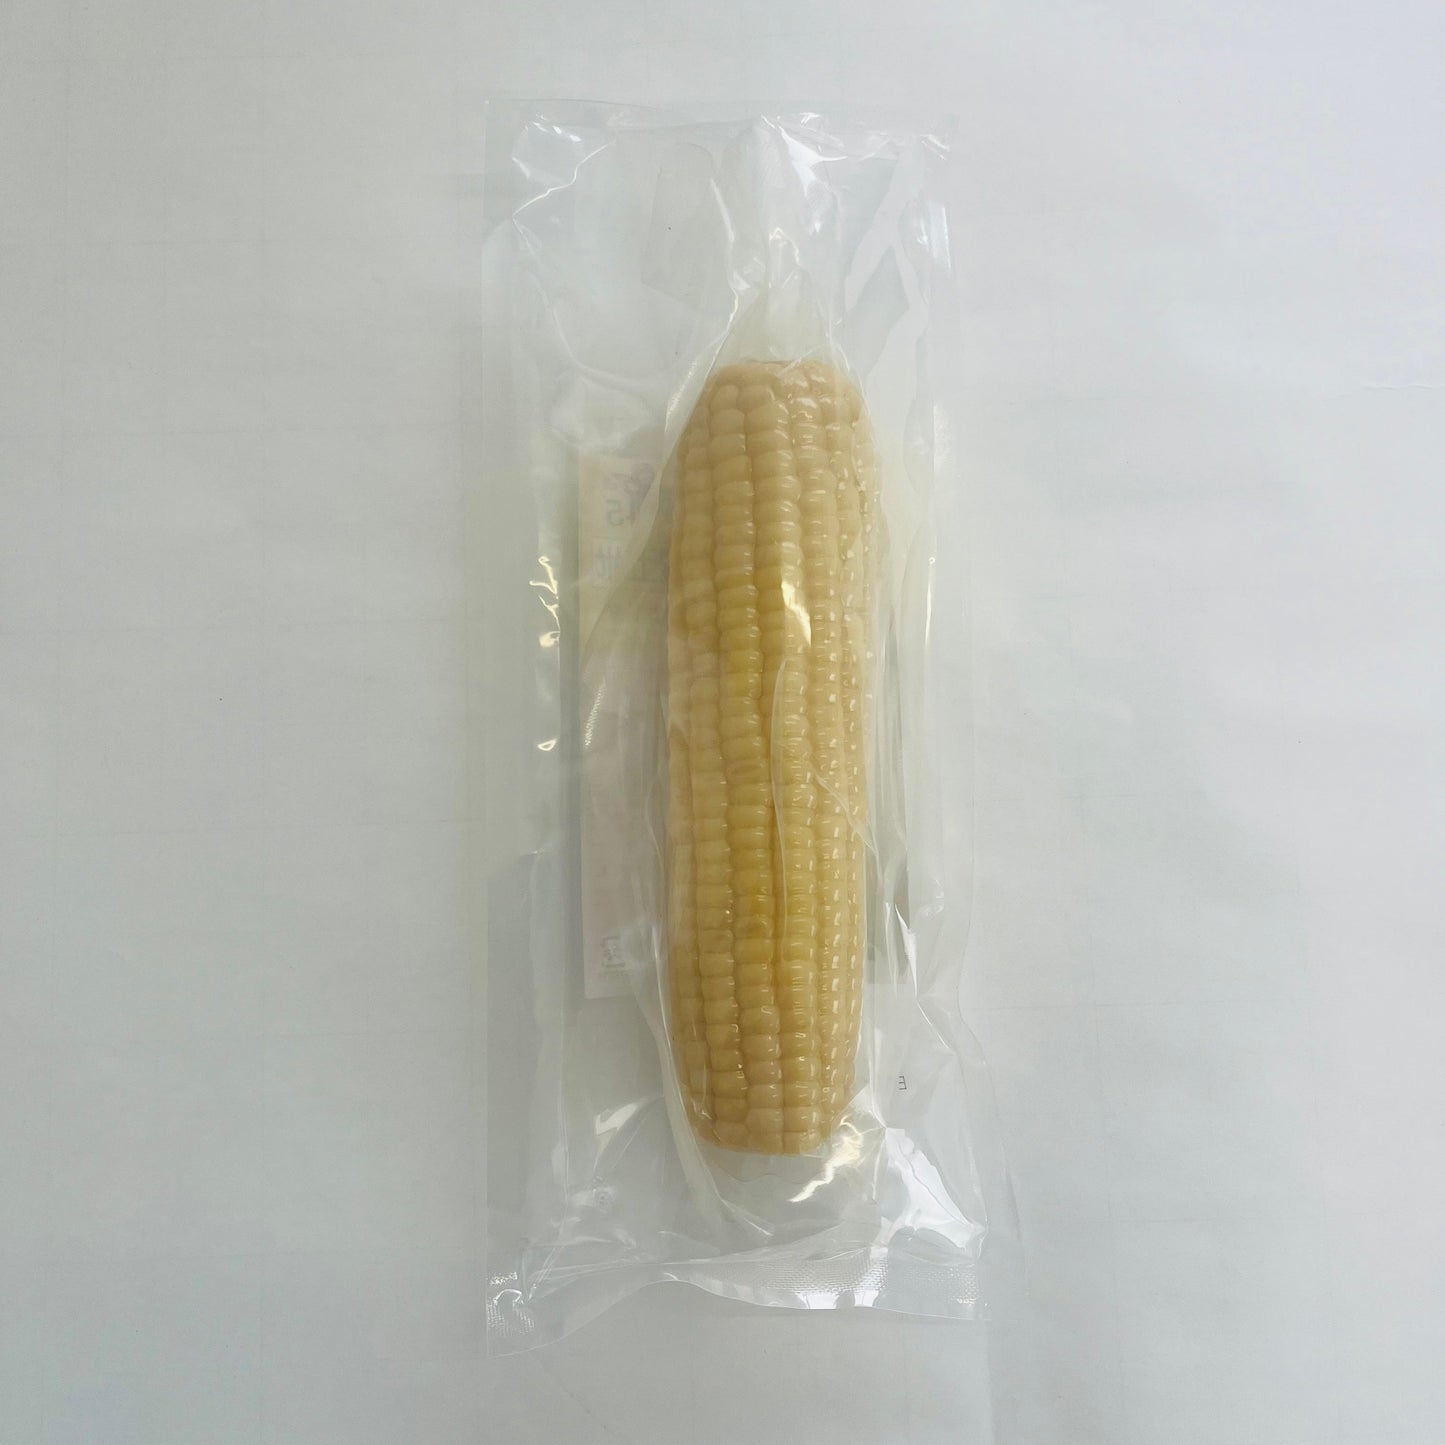 華華白糯玉米1個入* 30个整箱 中国东北甜糯玉米 又甜又糯 非转基因